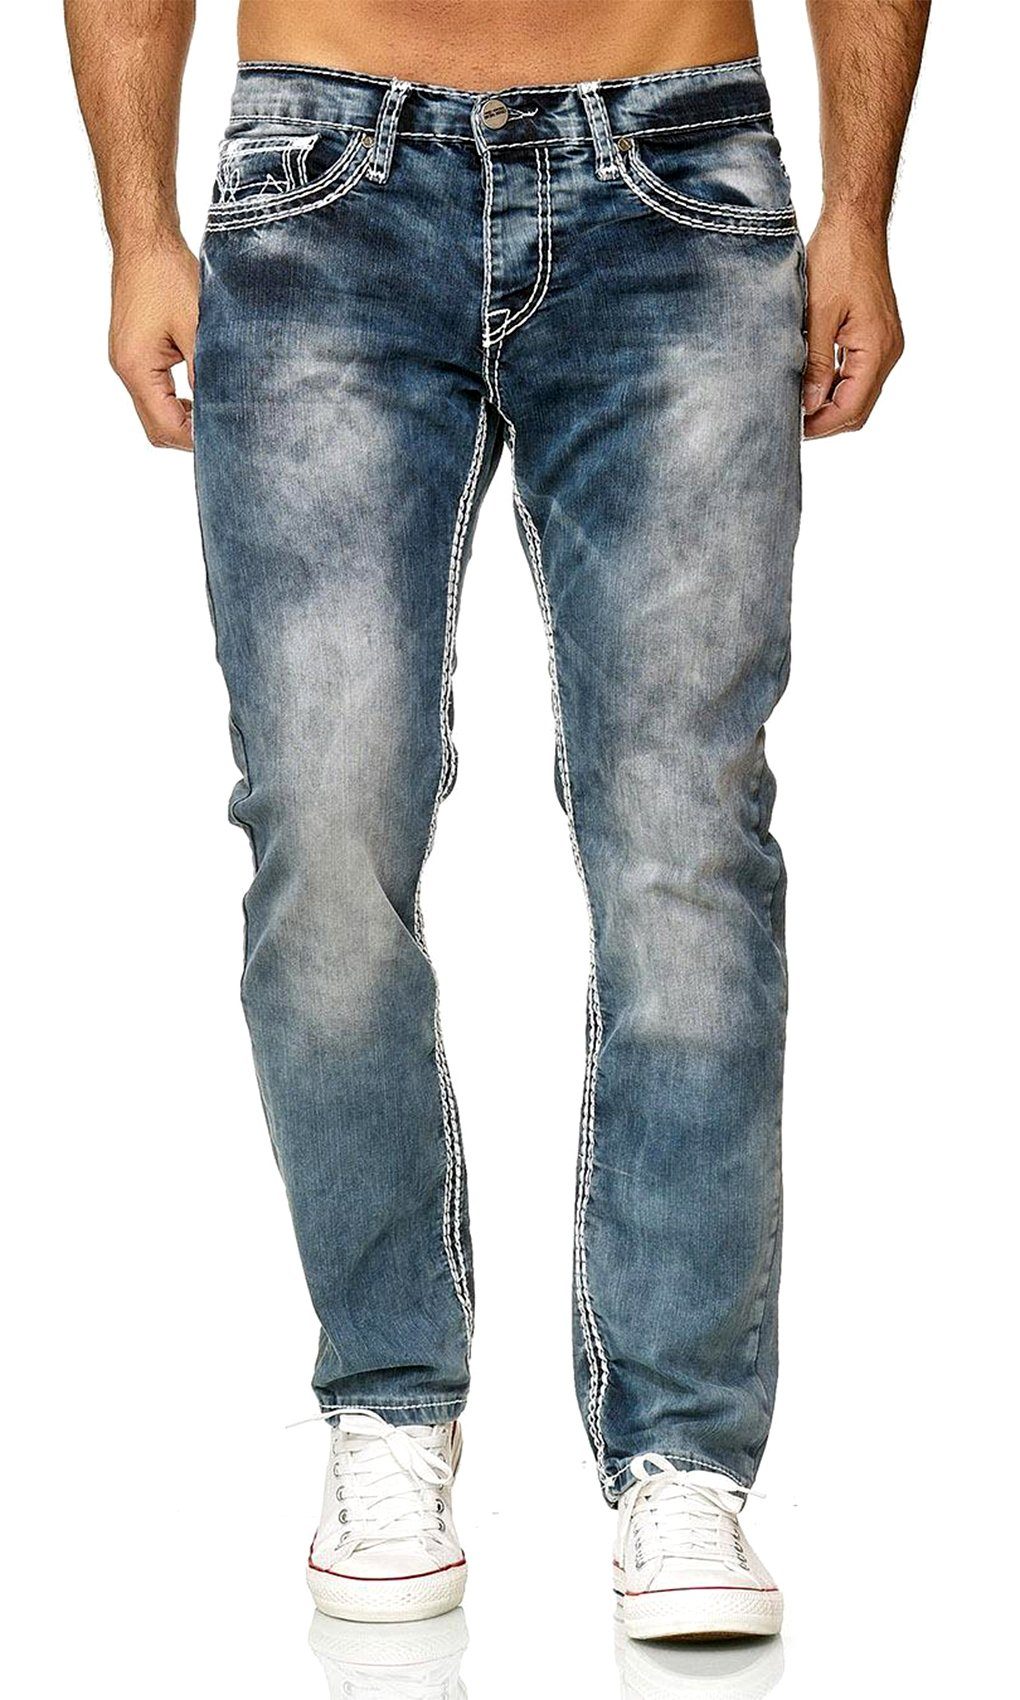 Baxboy Regular-fit-Jeans Herren Straight Denim Neon-Naht Jeans Stretch Blau(Weiss) Dicke Fit Stonewashed 9574